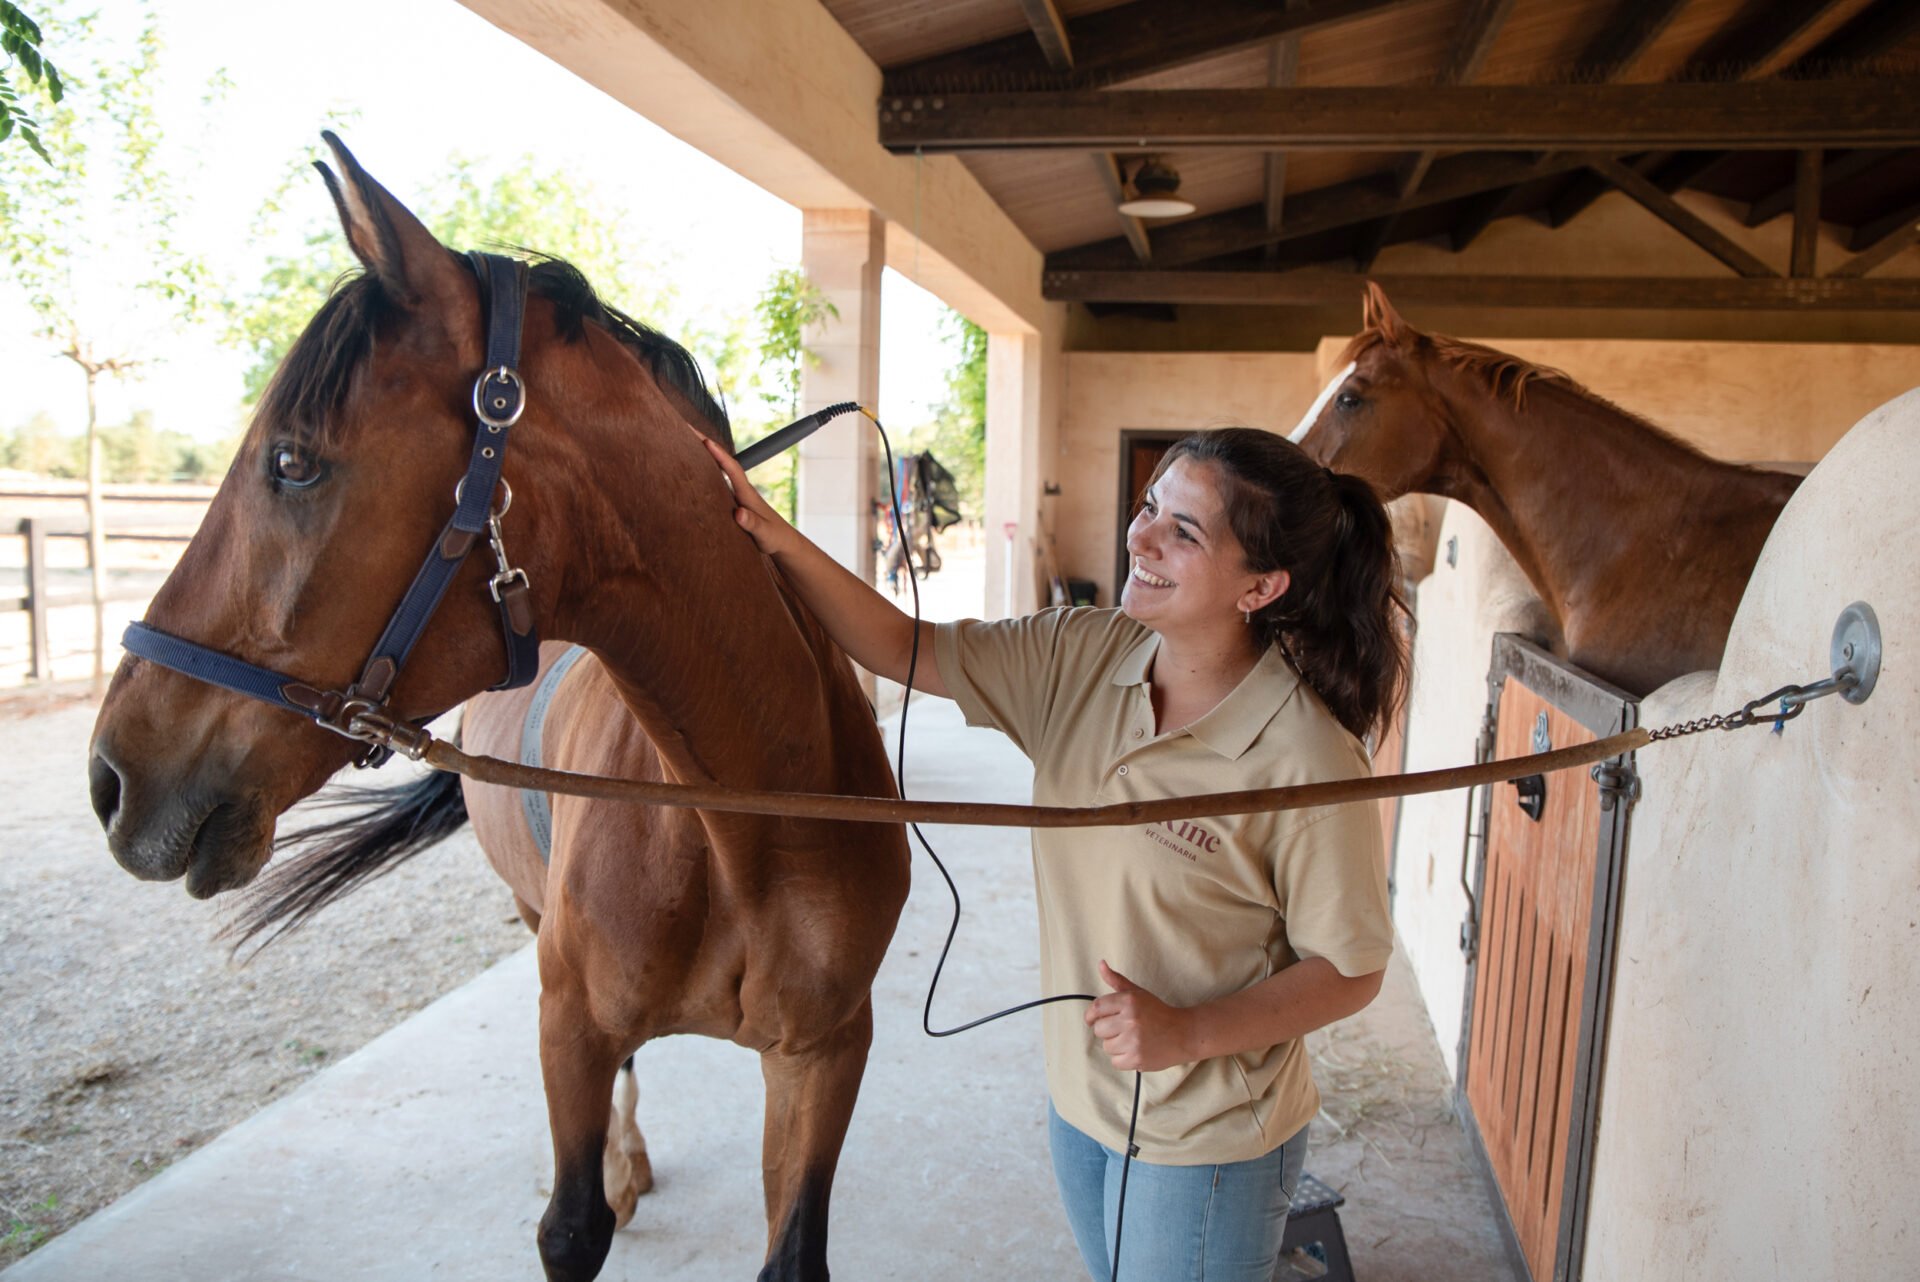 terapia y tratamientos para caballos - fisioterapia equina